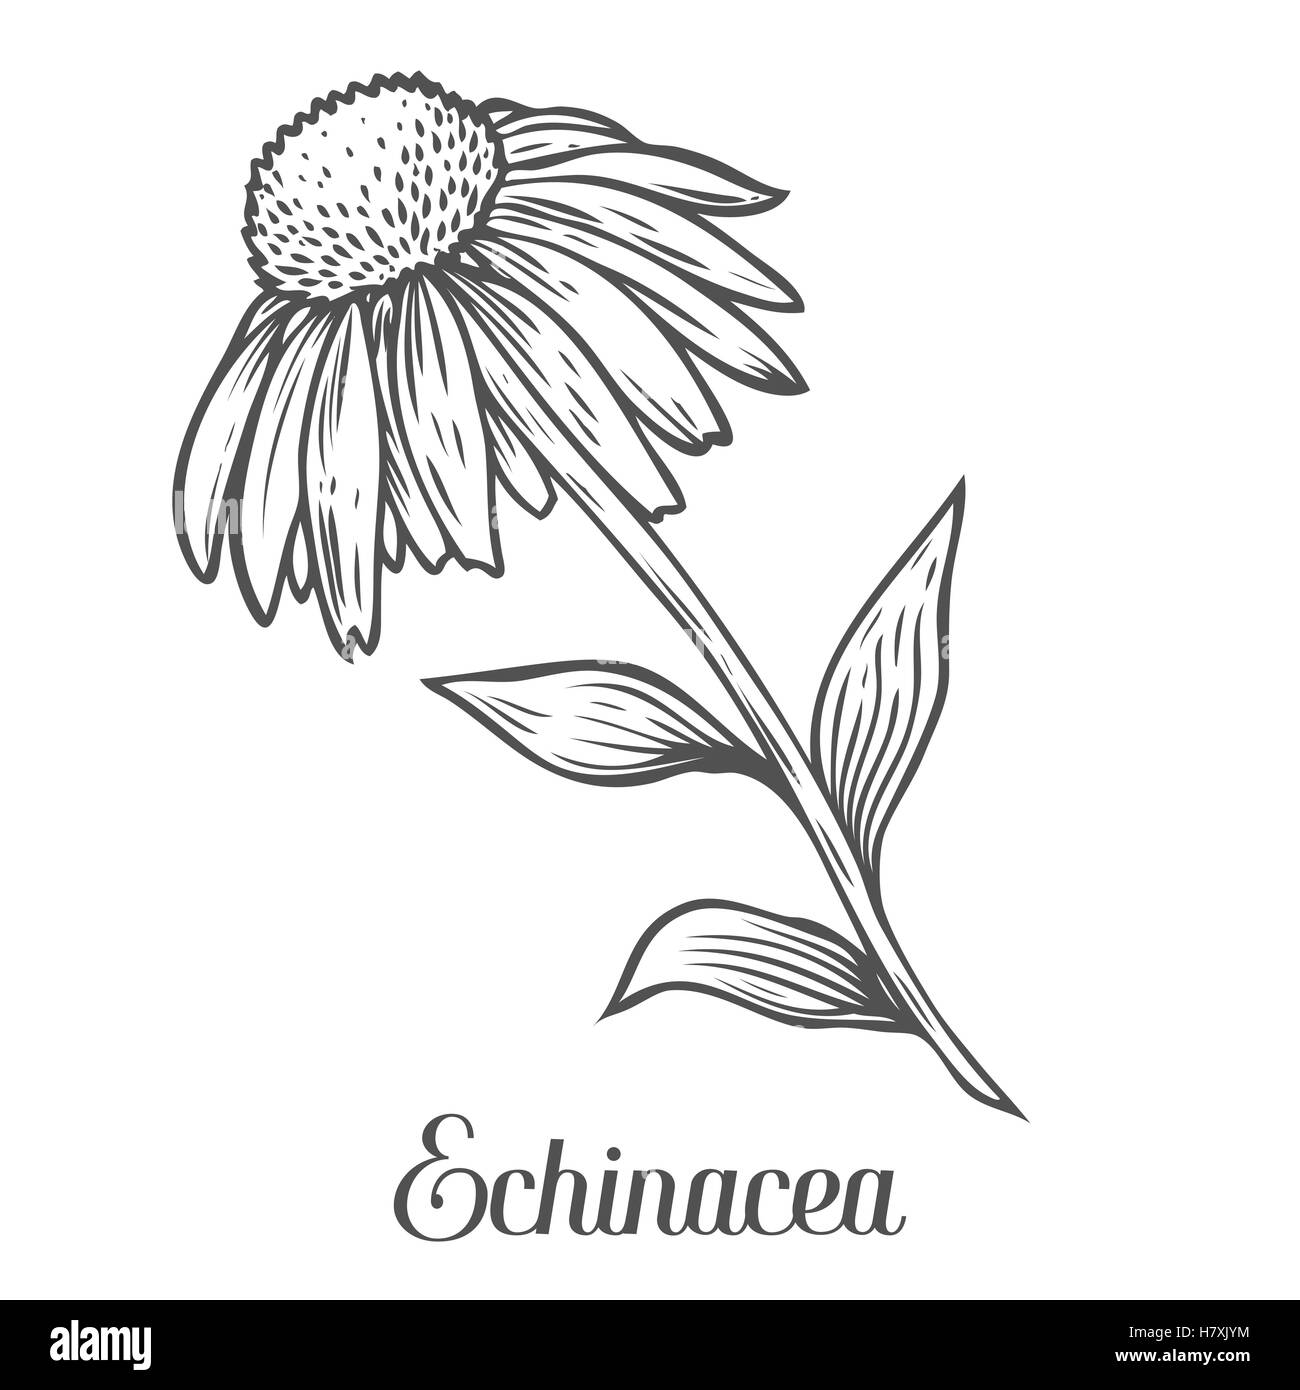 Echinacea Blume, Blatt, Pflanze. Schwarz auf weißem Hintergrund isoliert. Bio Natur medizinische ayurvedische Kräuter. Handgezeichnete graviert Stock Vektor